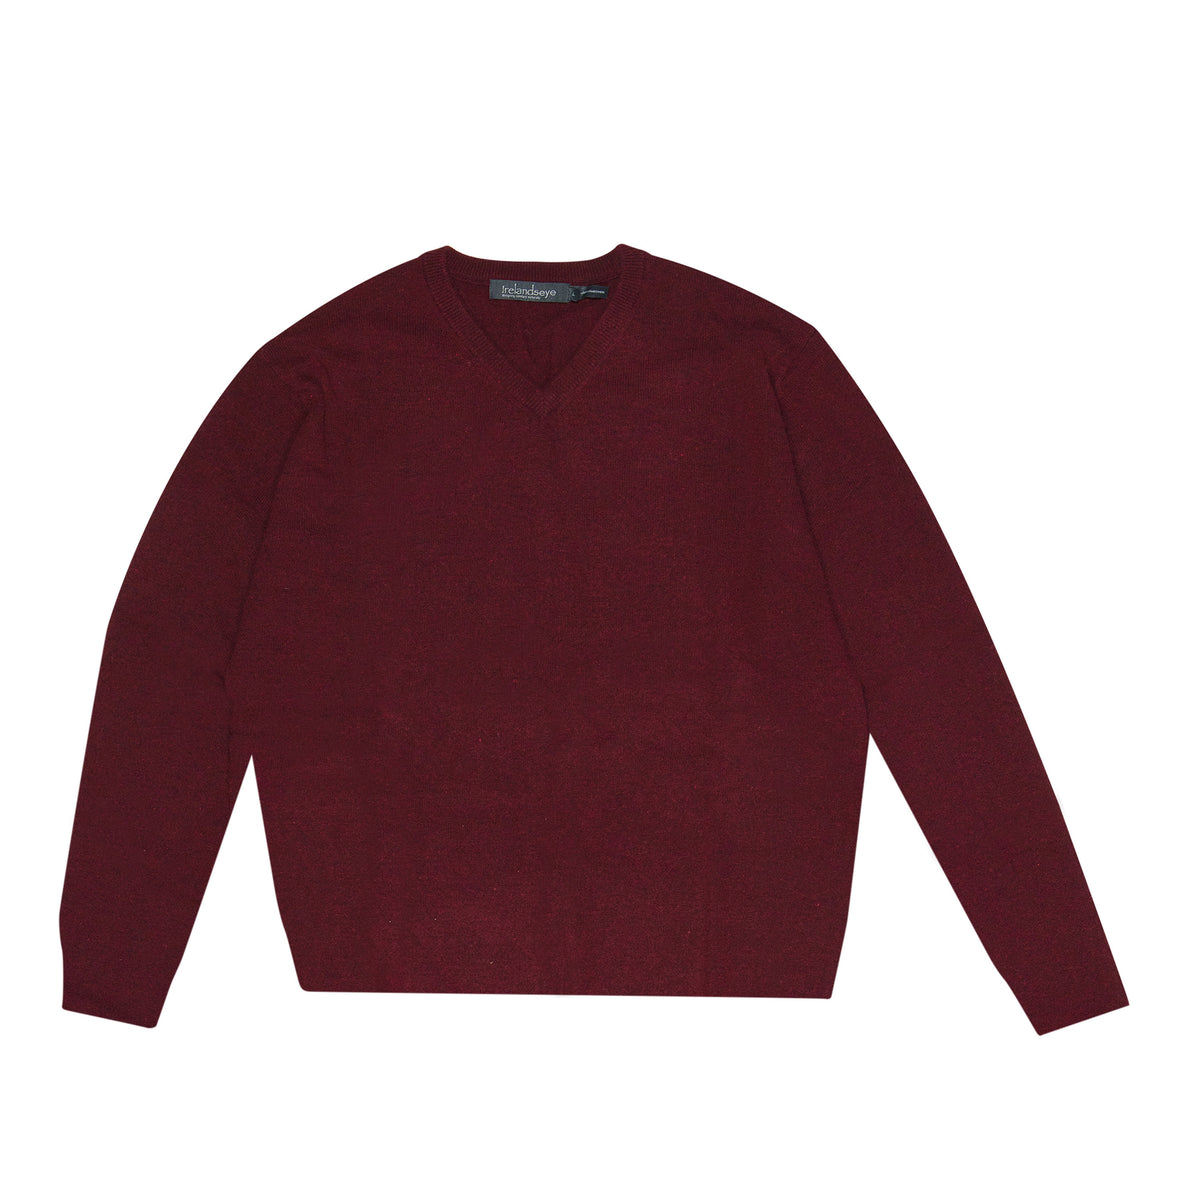 IrelandsEye Knitwear Easy Care V Neck Wool Sweater Deep Claret